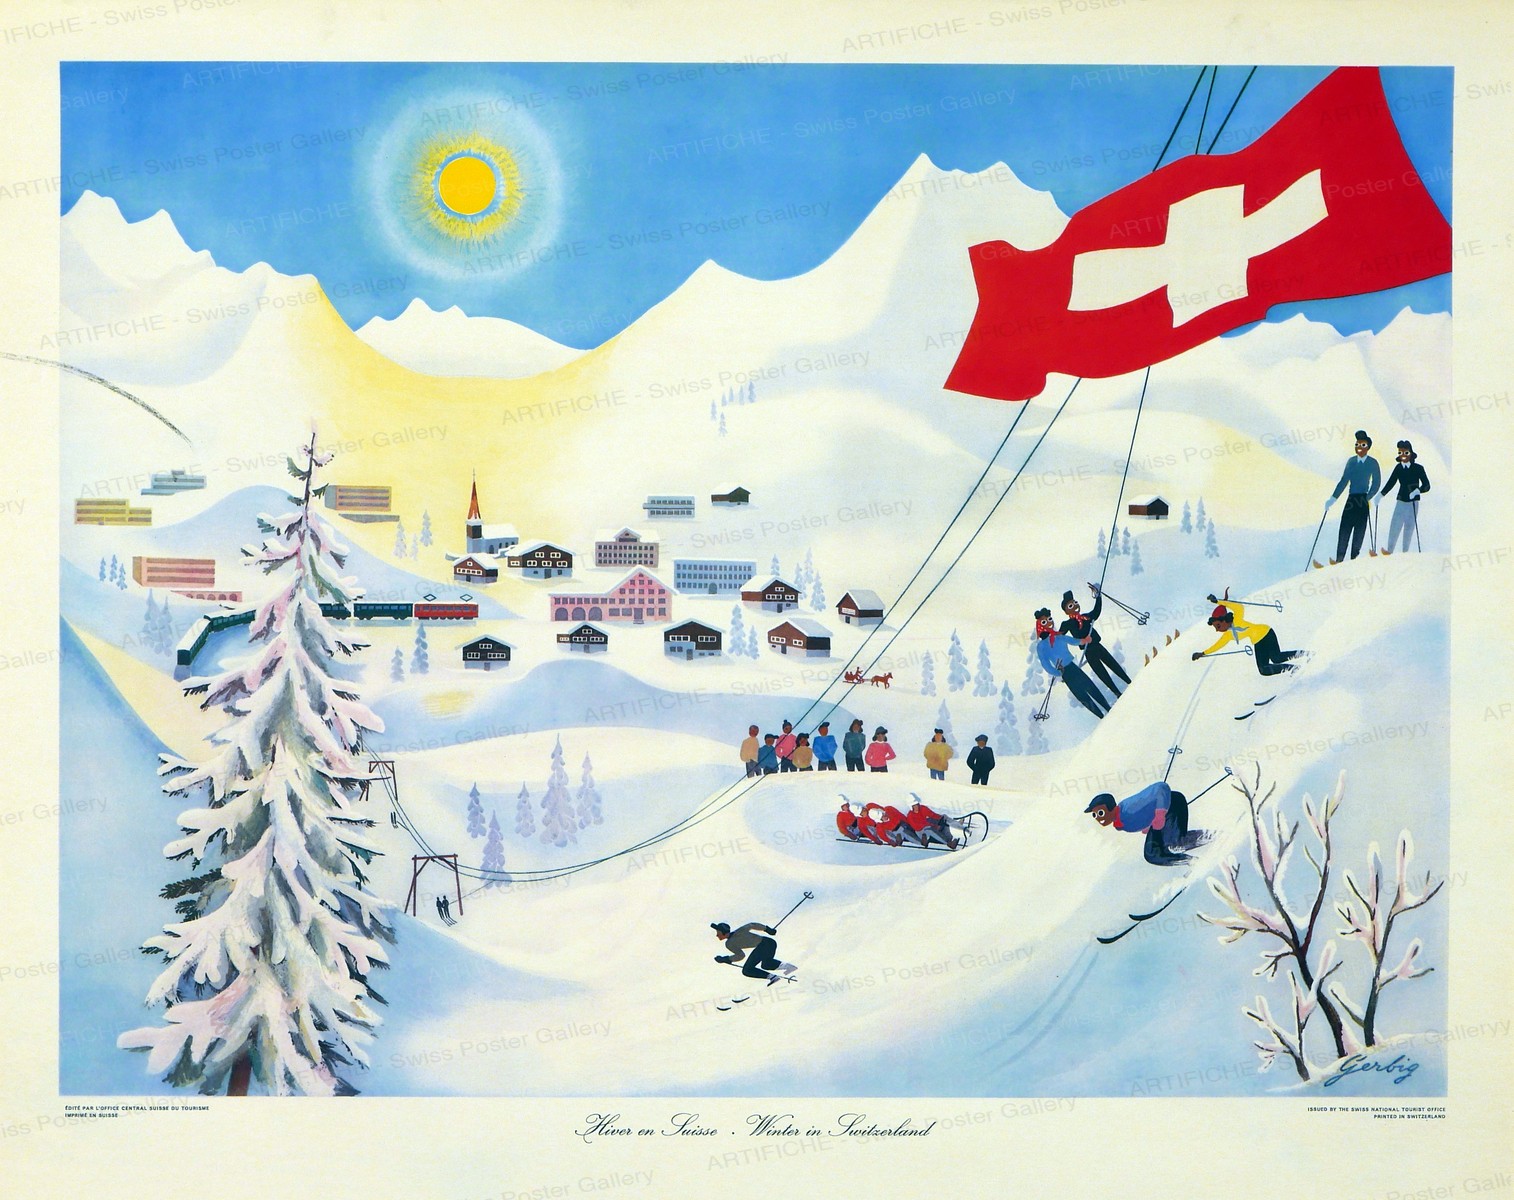 Hiver en Suisse – Winter in Switzerland, Richard Gerbig